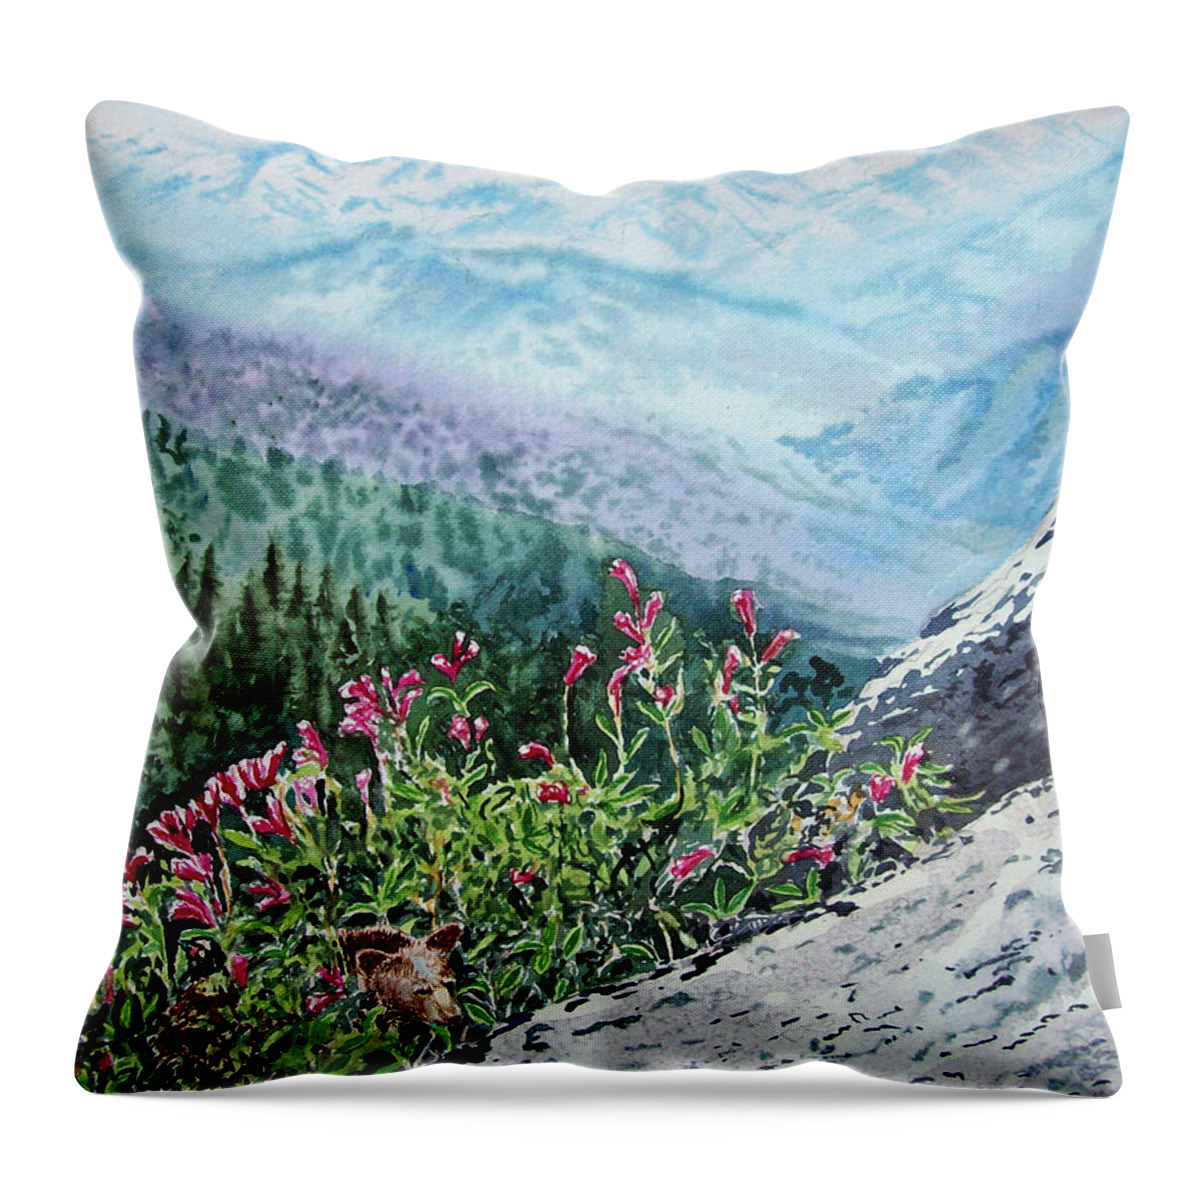 Sequoia Throw Pillow featuring the painting Sequoia National Park by Irina Sztukowski